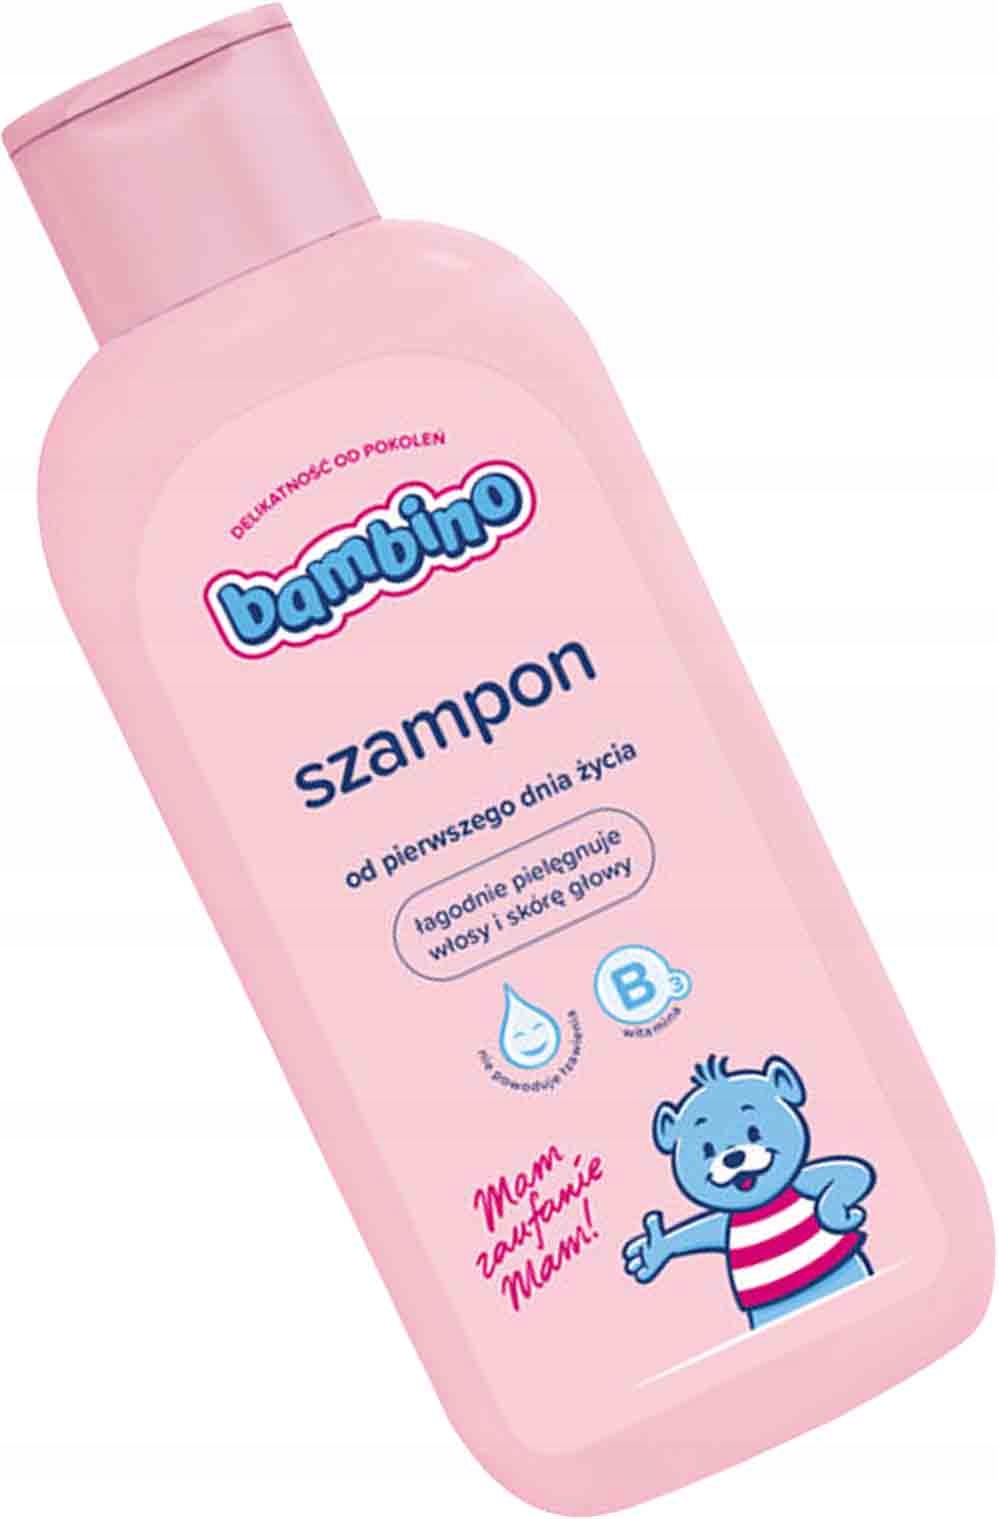 szampon dla dzueci